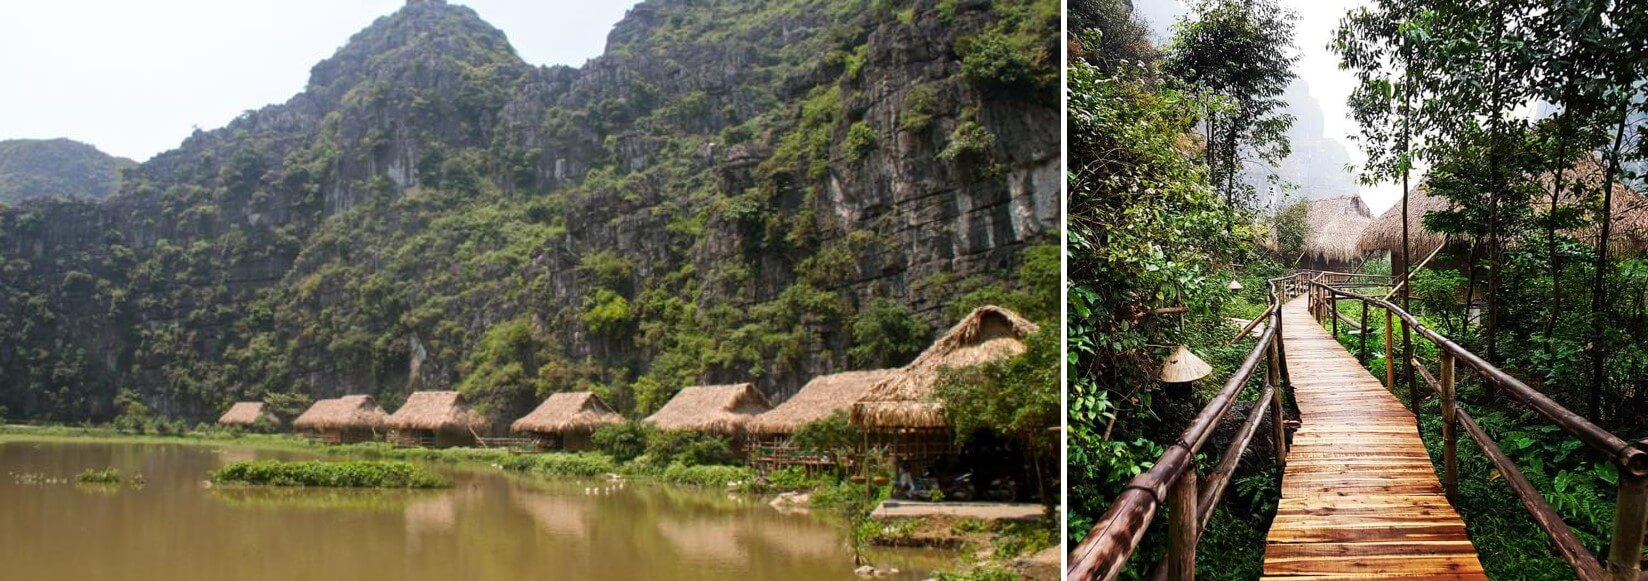 99 Homestay Ninh Bình giá rẻ đẹp có hồ bơi view “TỰA NÚI SÔNG” 100k